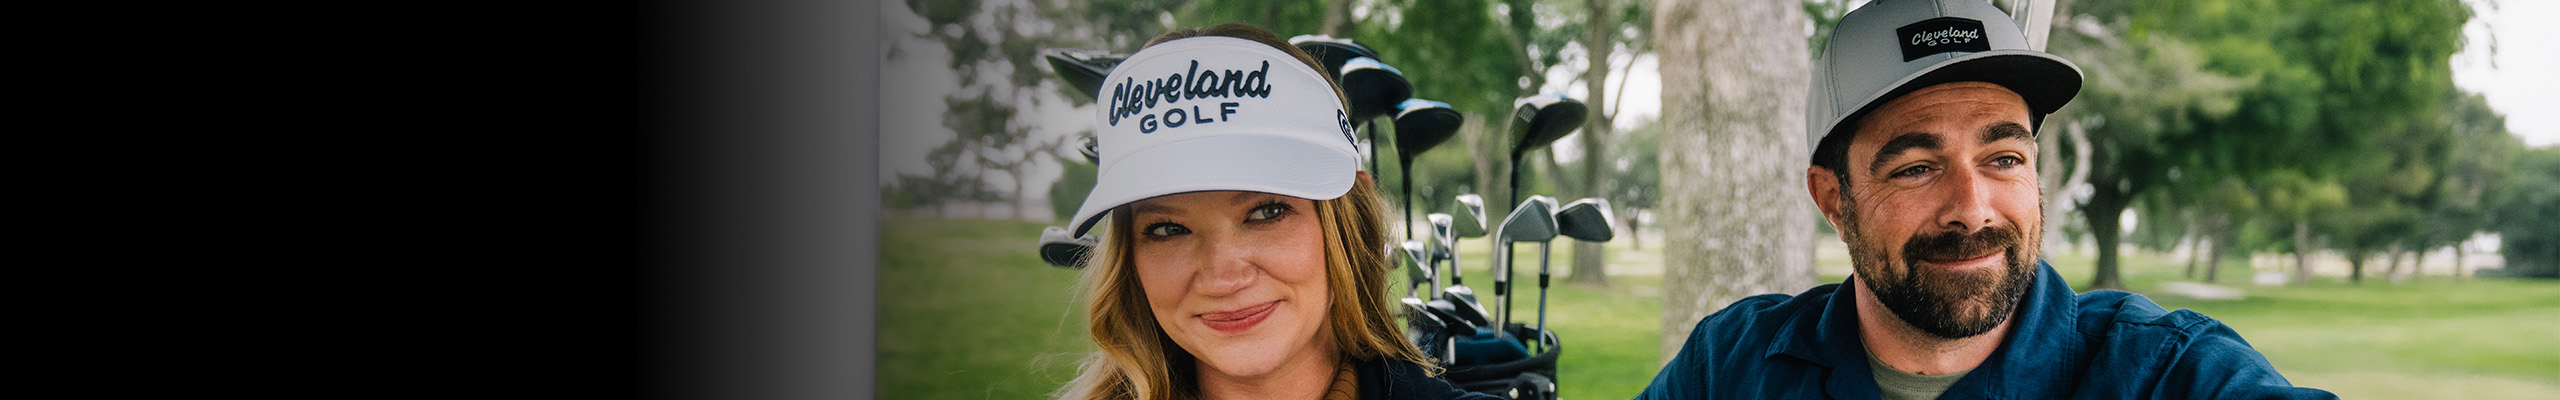 Cleveland Golf Gear